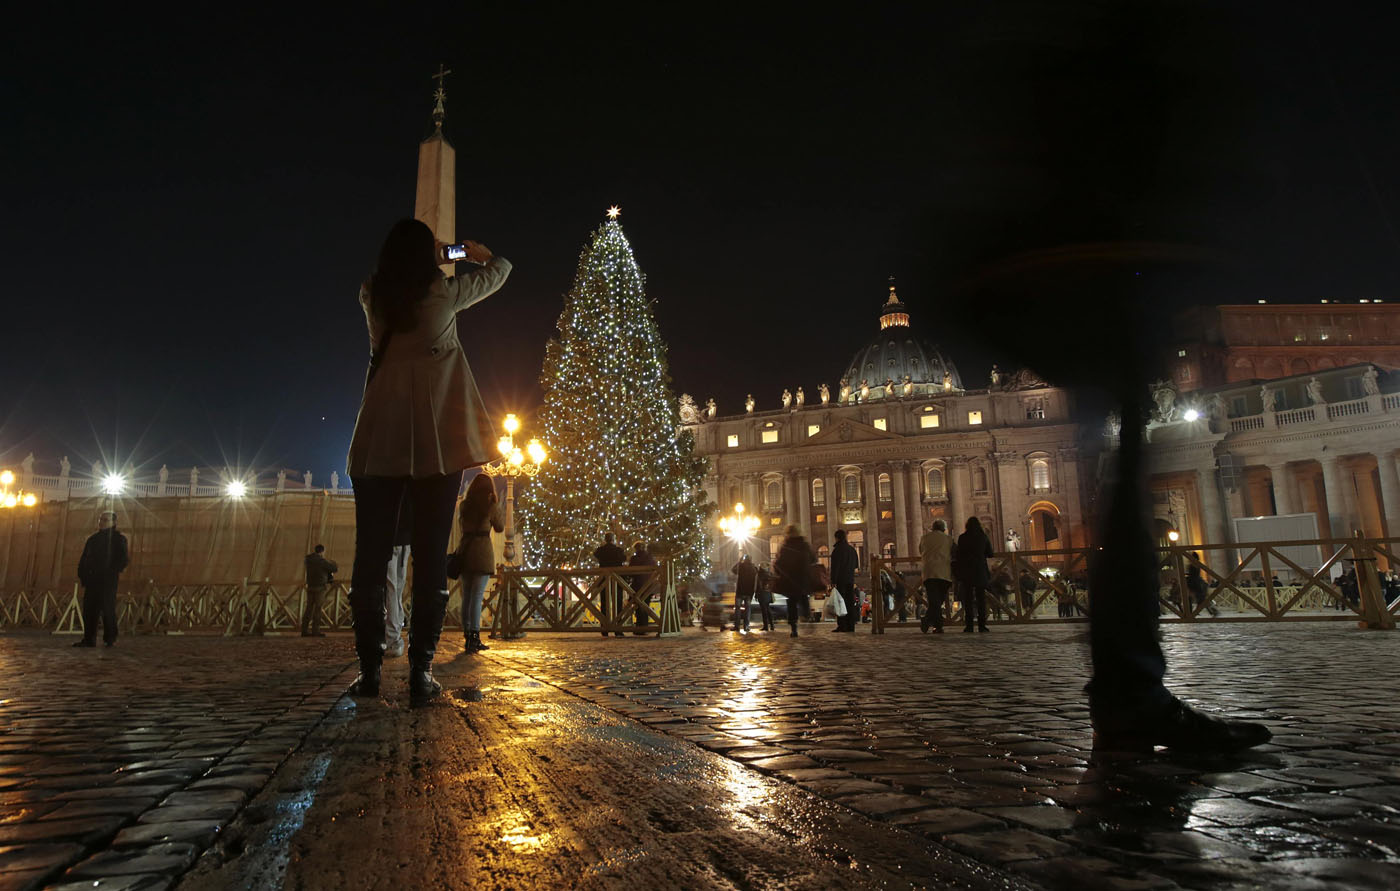  Nacimiento y Árbol de Navidad gigante, la atracción en el Vaticano